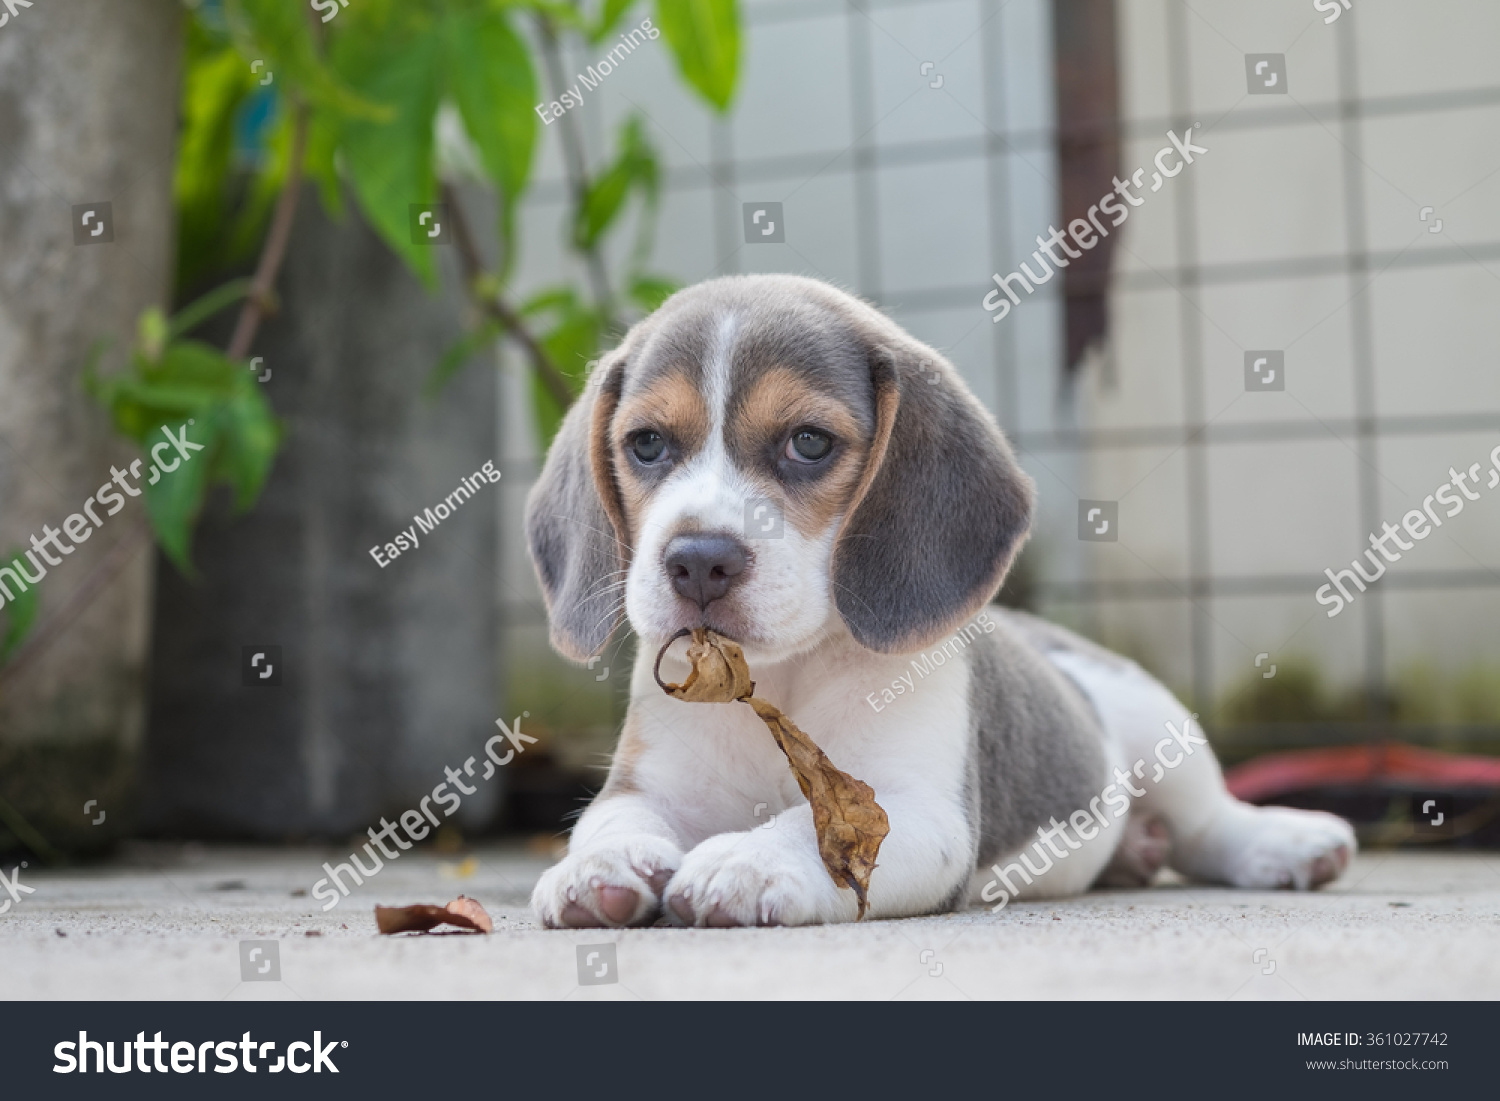 blue beagle